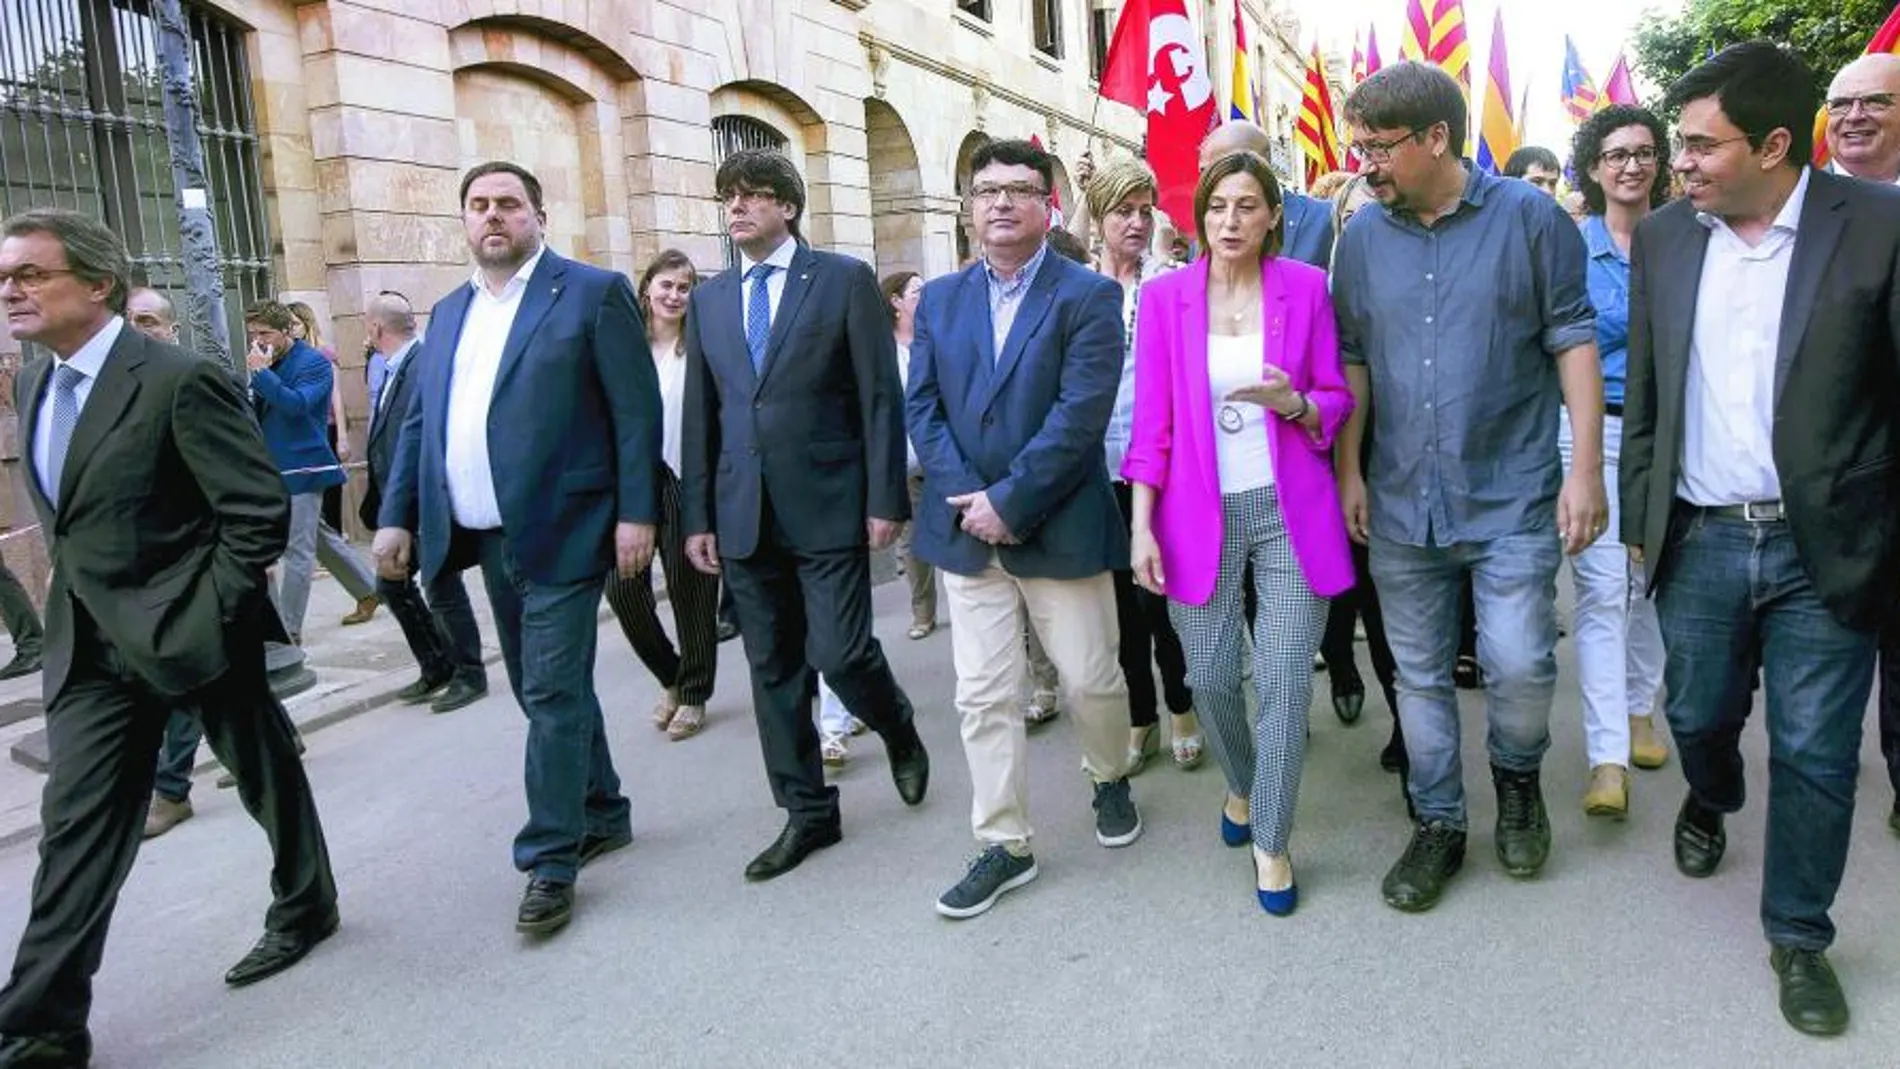 En el centro, Joan Josep Nuet, secretario tercero de la Mesa del Parlament, acude a declarar flanqueado por (de izquierda a derecha) Mas, Junqueras, Puigdemont, Forcadell, Domenech y Pisarello